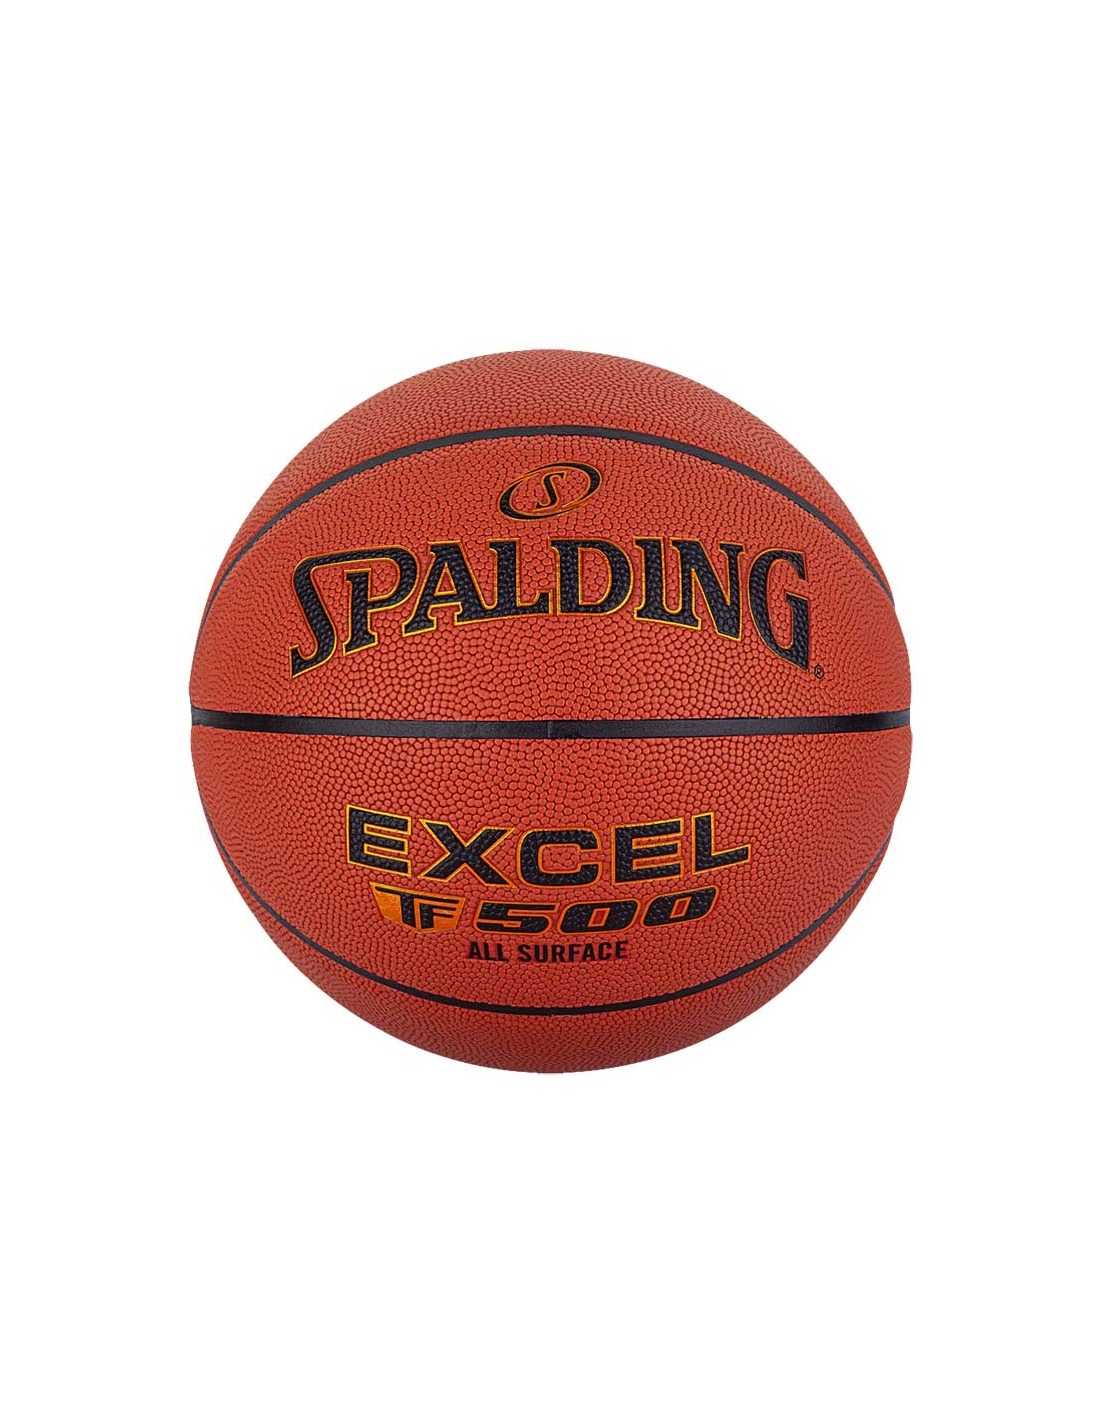 Balón de baloncesto Spalding TF 500 - Talla 6